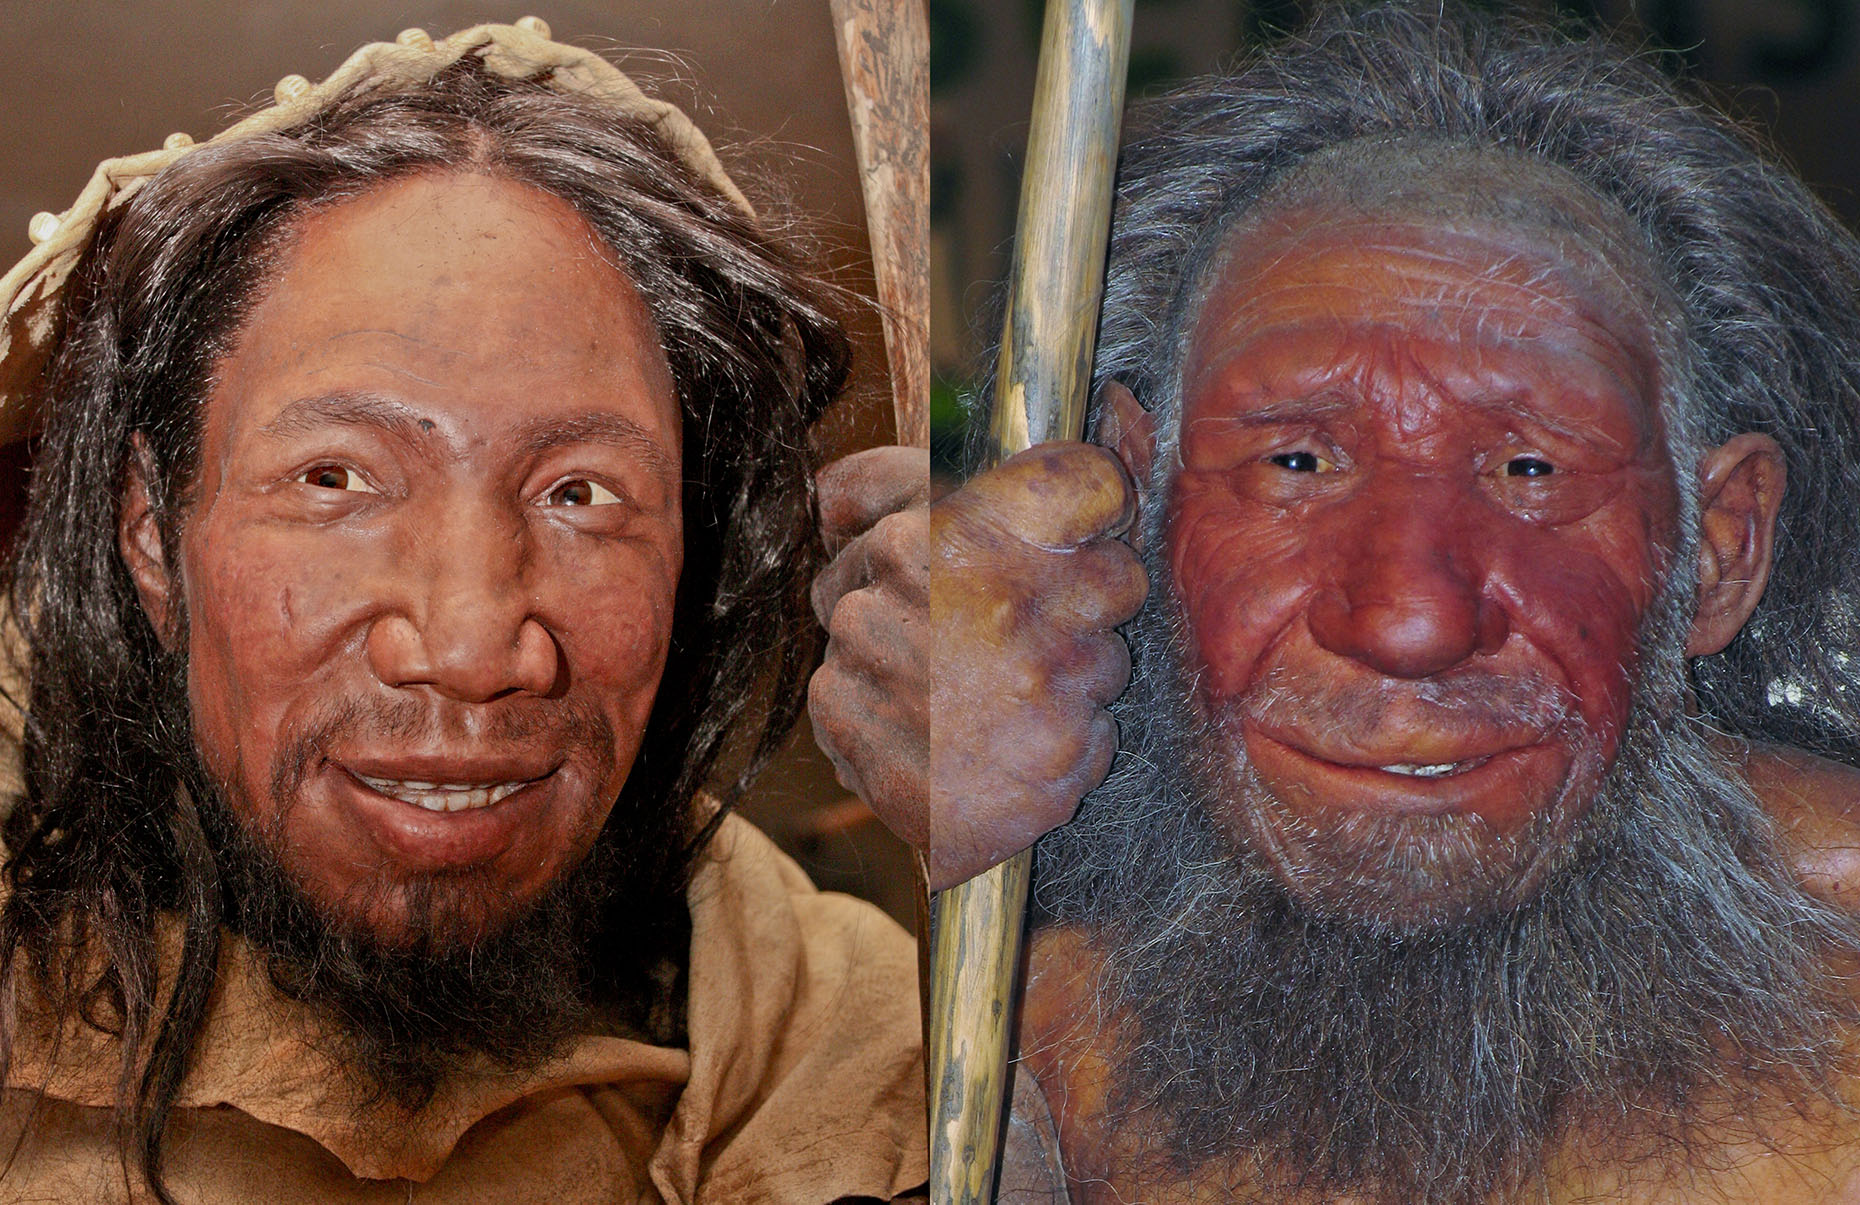 Représentation des visages de l’Homo sapiens (à gauche) et de l’Homo neanderthalensis (à droite). © Daniela Hitzemann et Stefan Scheer, Creative Commons 4.0